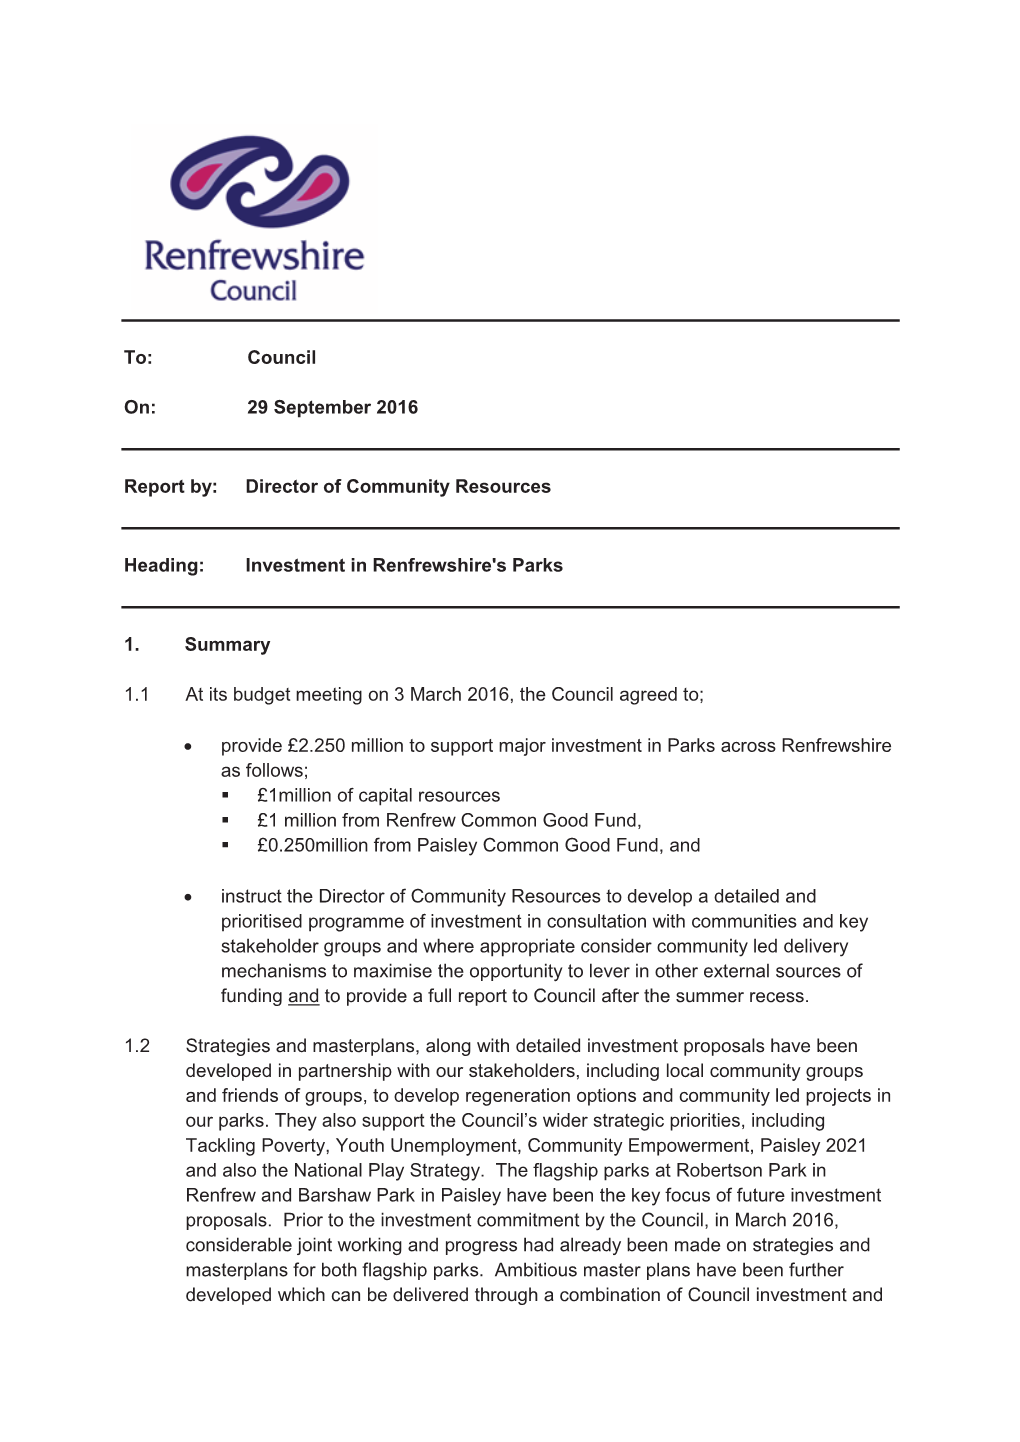 Investment in Renfrewshire's Parks 1. Summ